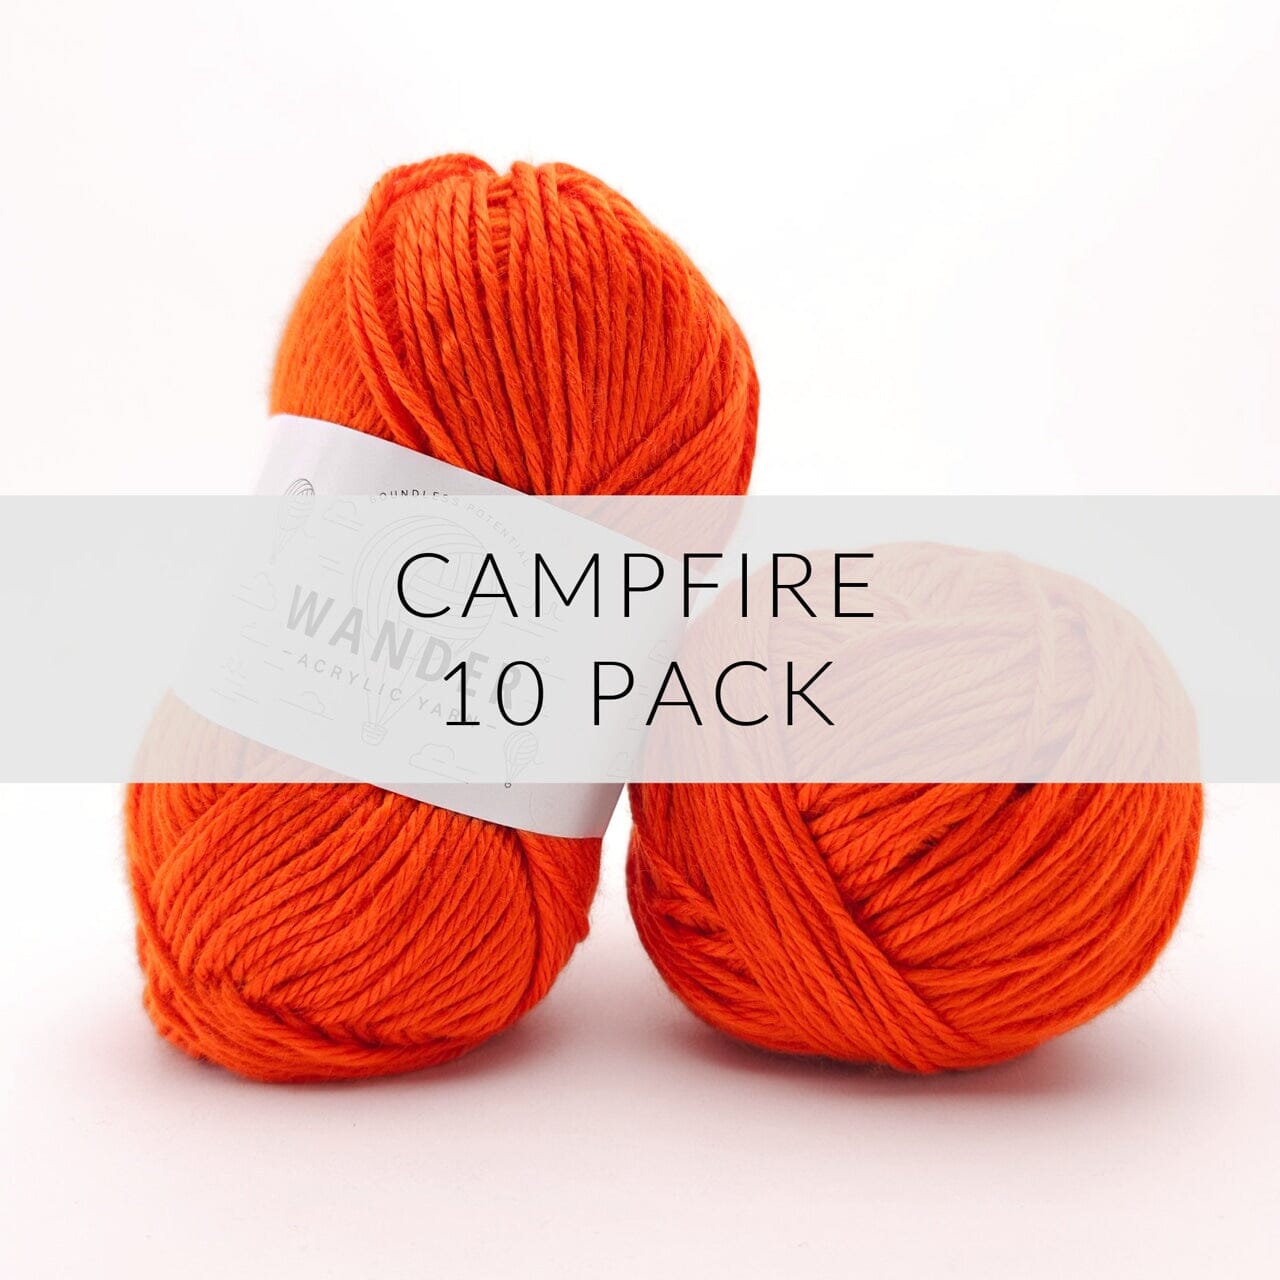 10 Pack Wander Acrylic Yarn Yarn FurlsCrochet Campfire 